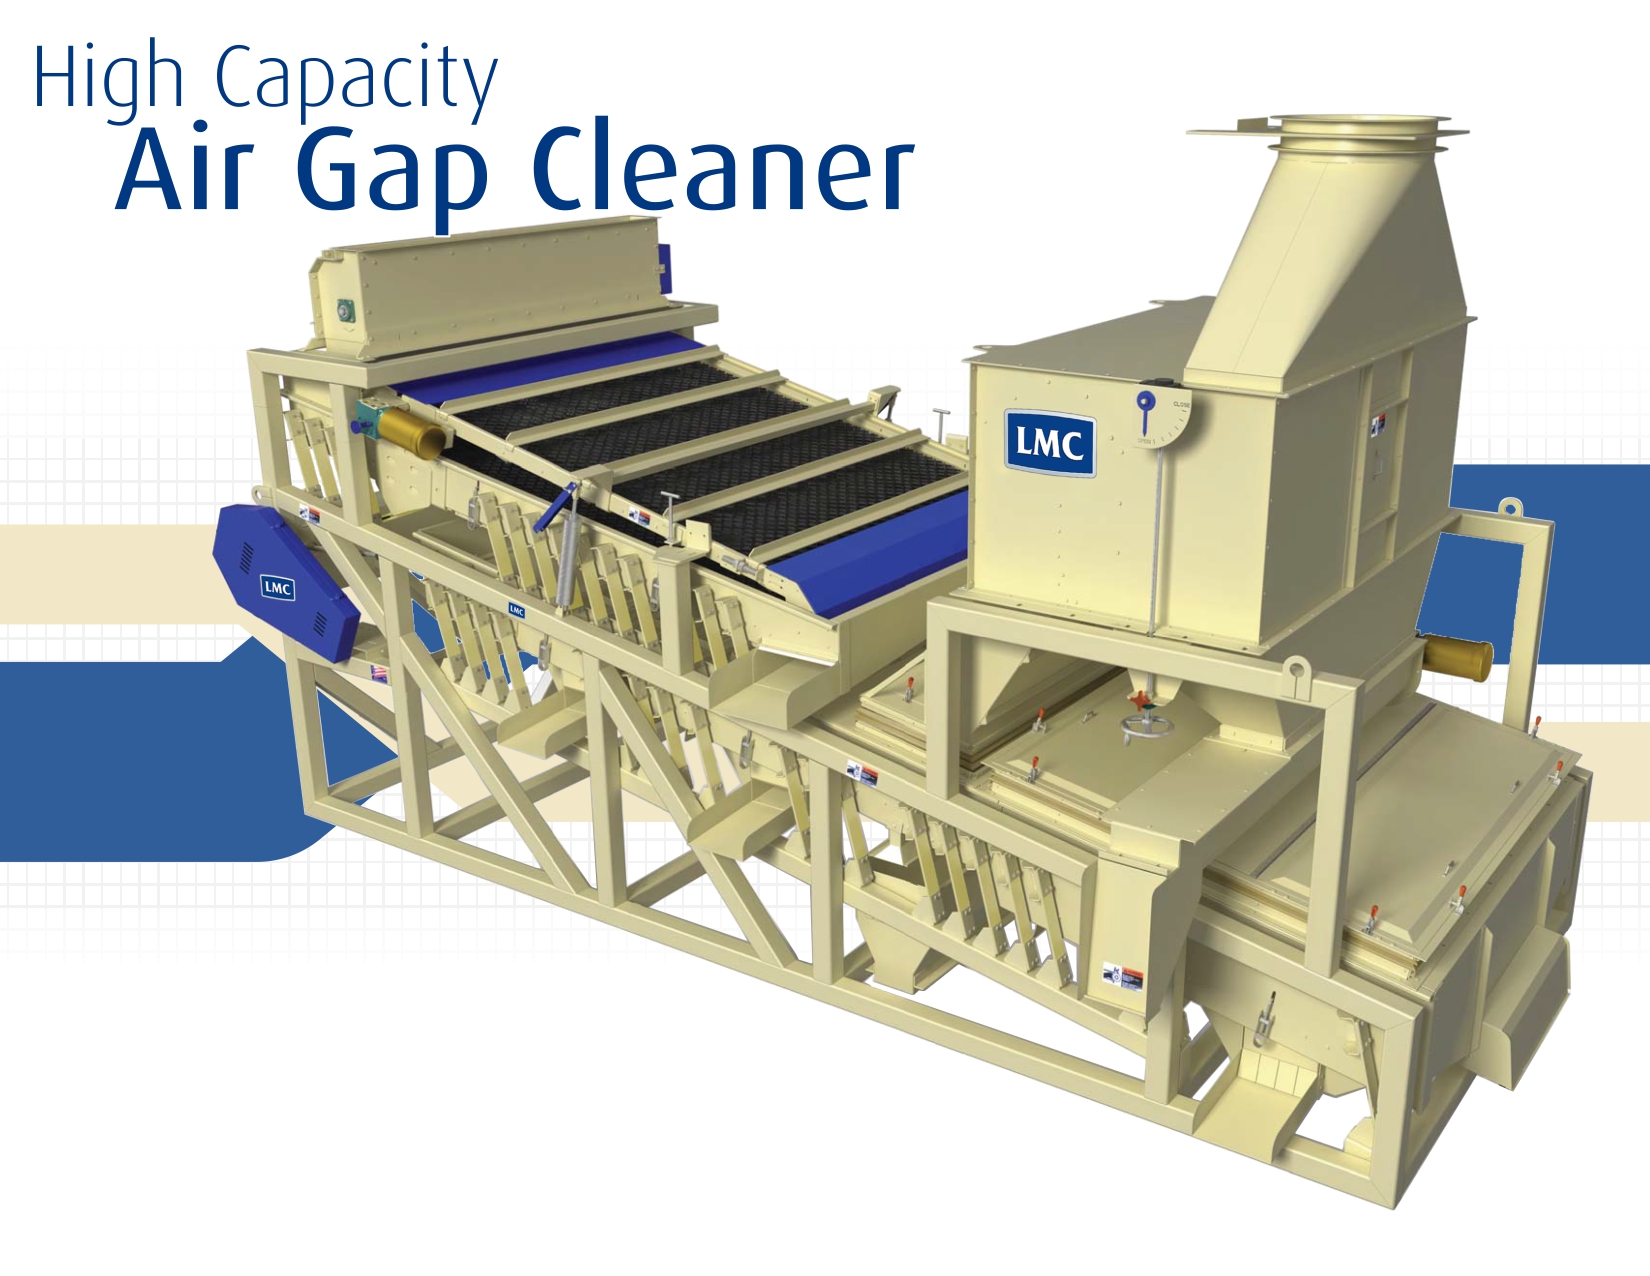 https://www.lmcarter.com/wp-content/uploads/2020/06/Air-Gap-Cleaner_2020.jpg